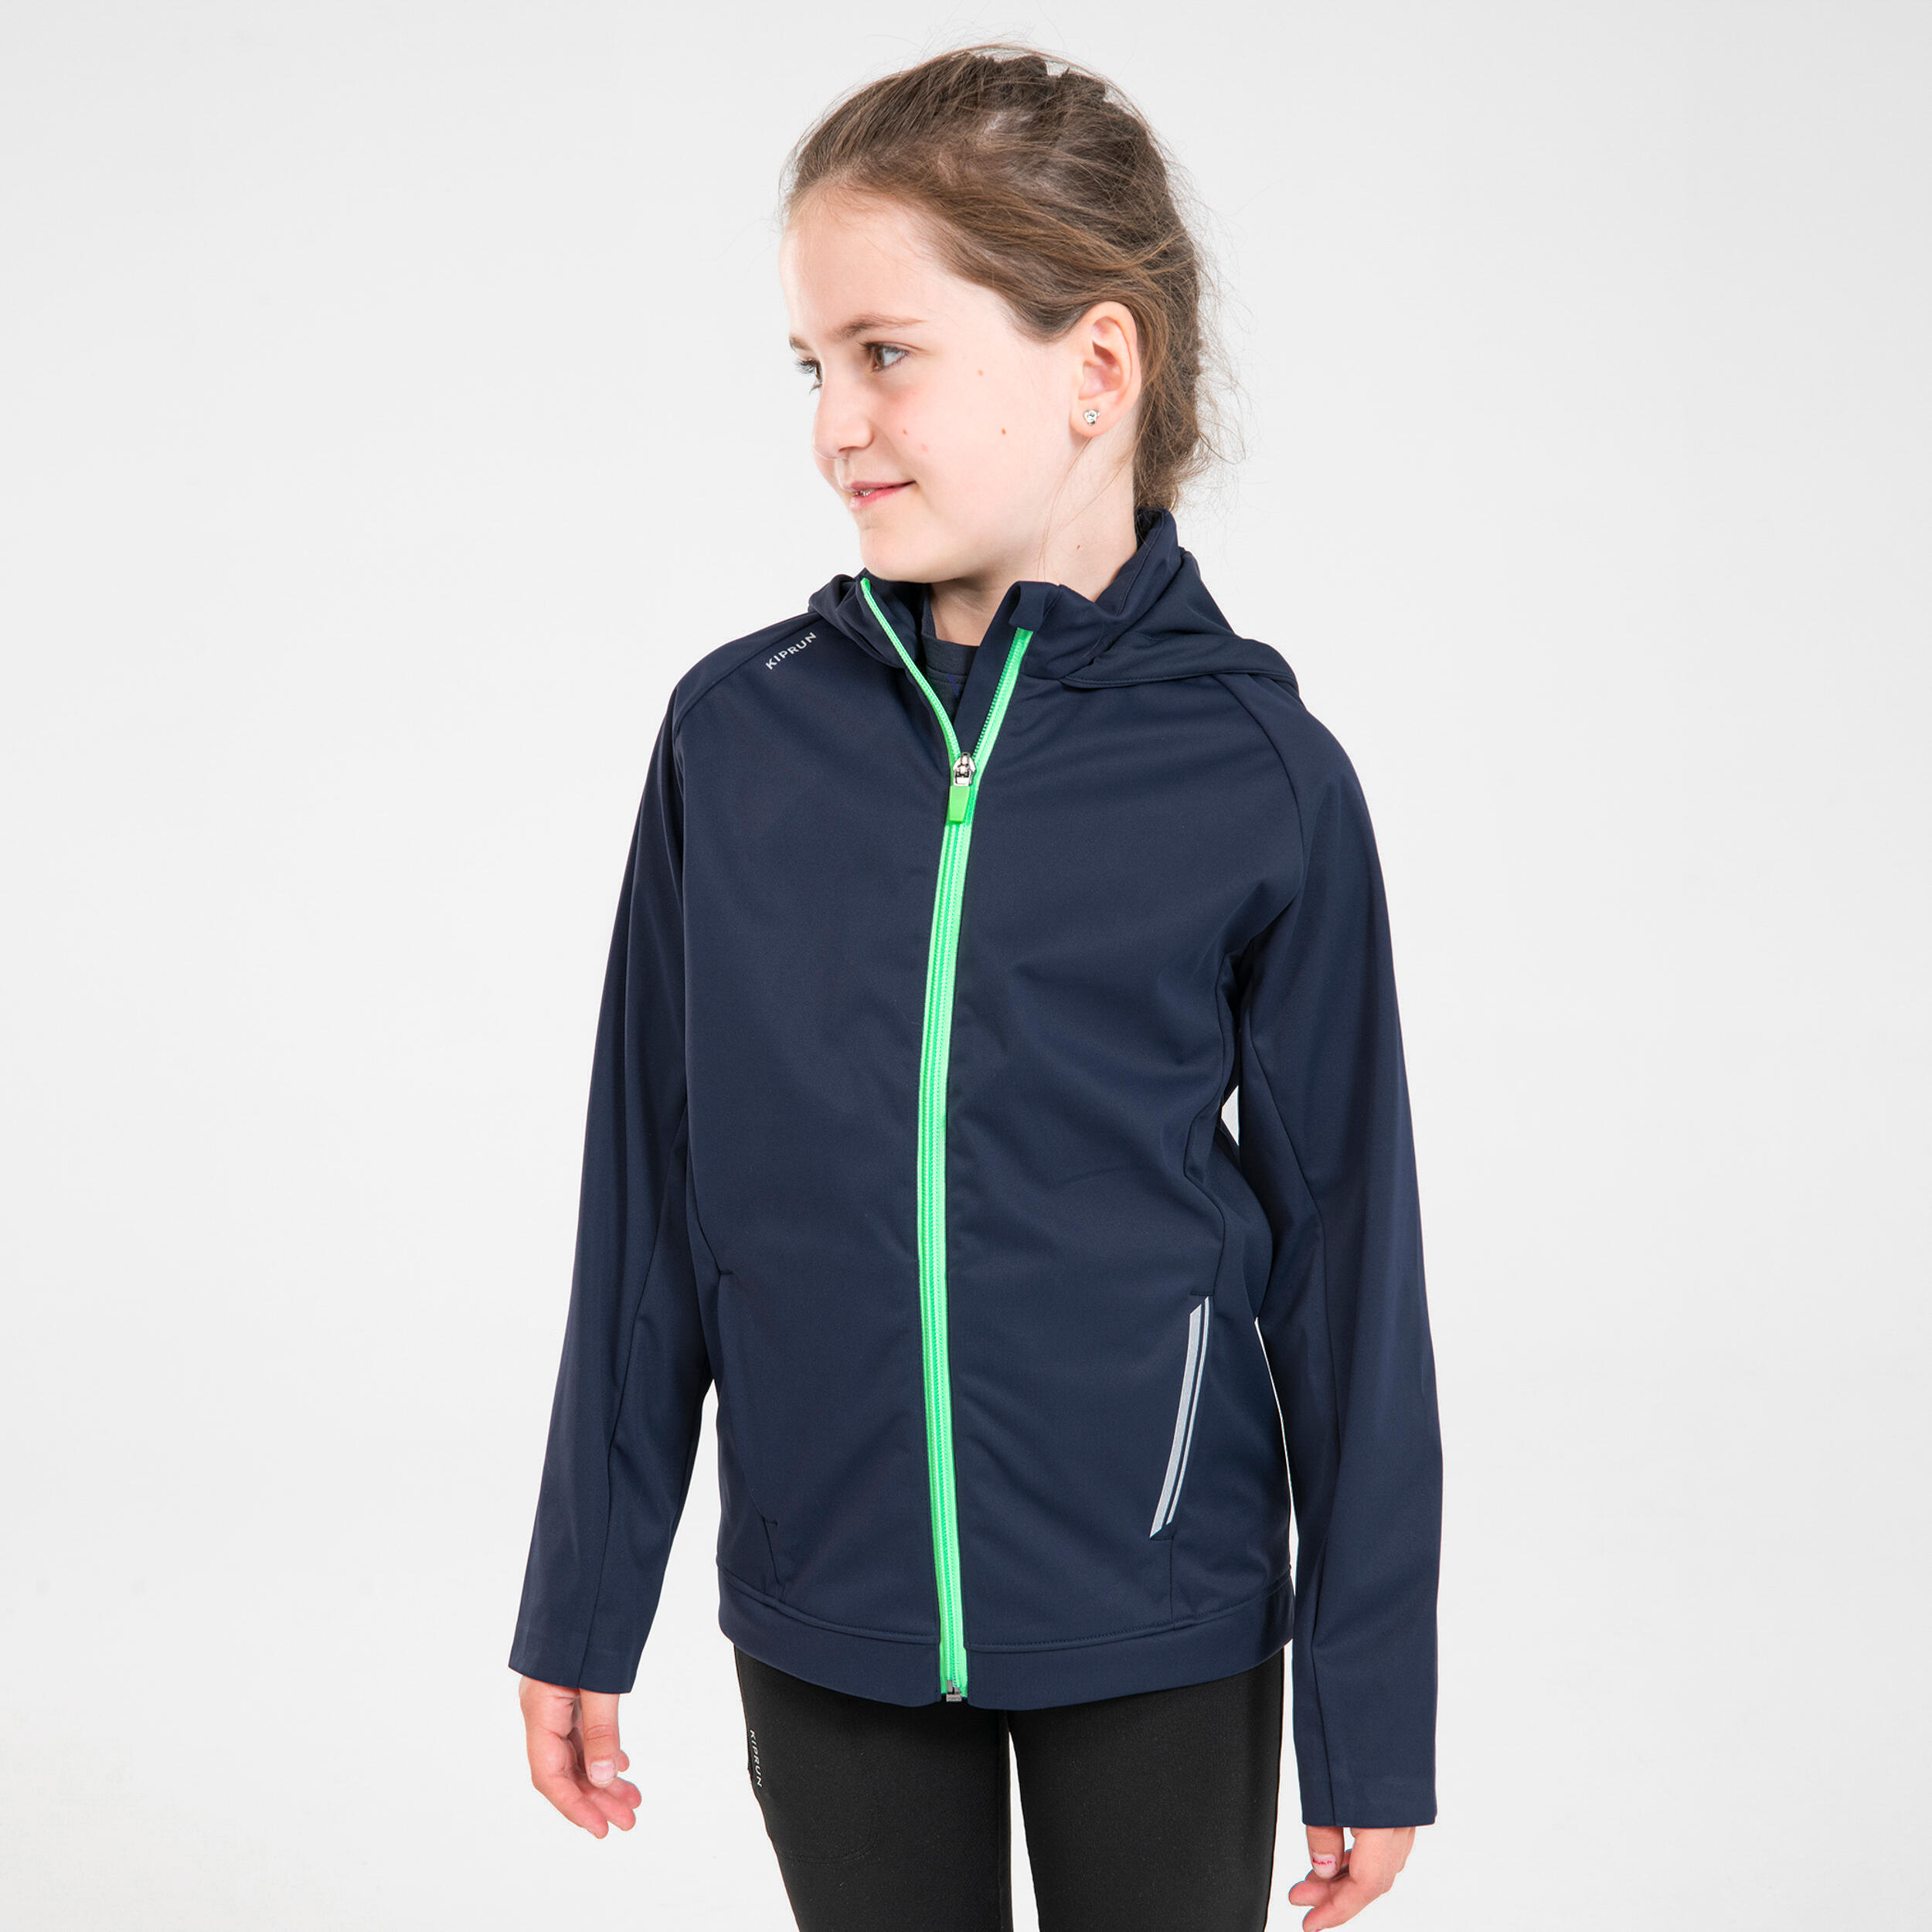 Jachetă Călduroasă Alergare AT500 Bleumarin-Verde Copii decathlon.ro  Imbracaminte mers